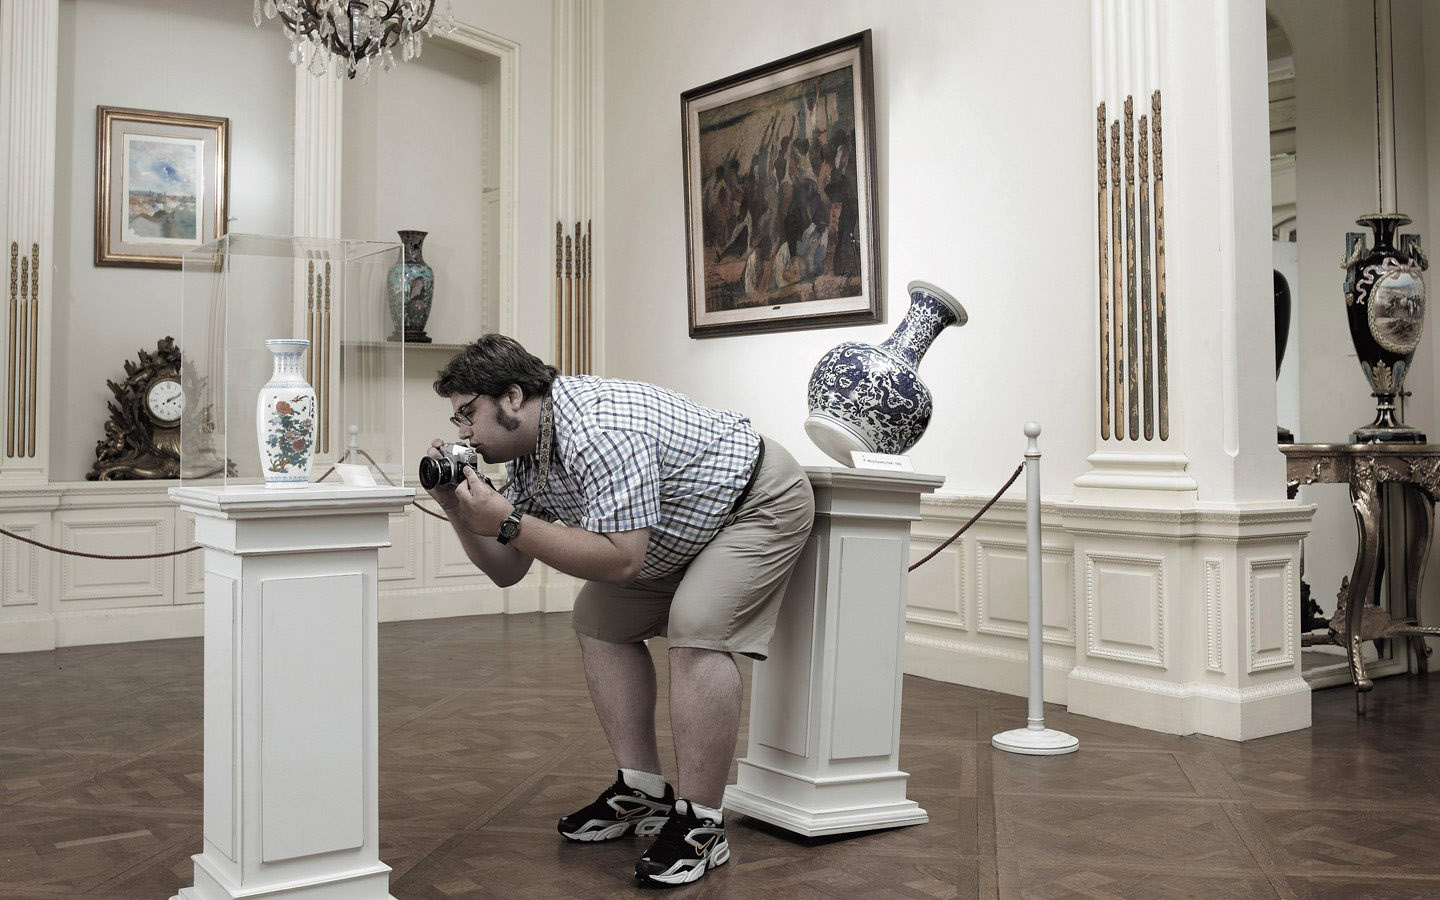 عکس جالب و بامزه عکاس چاق در موزه با تیپ شلوارک